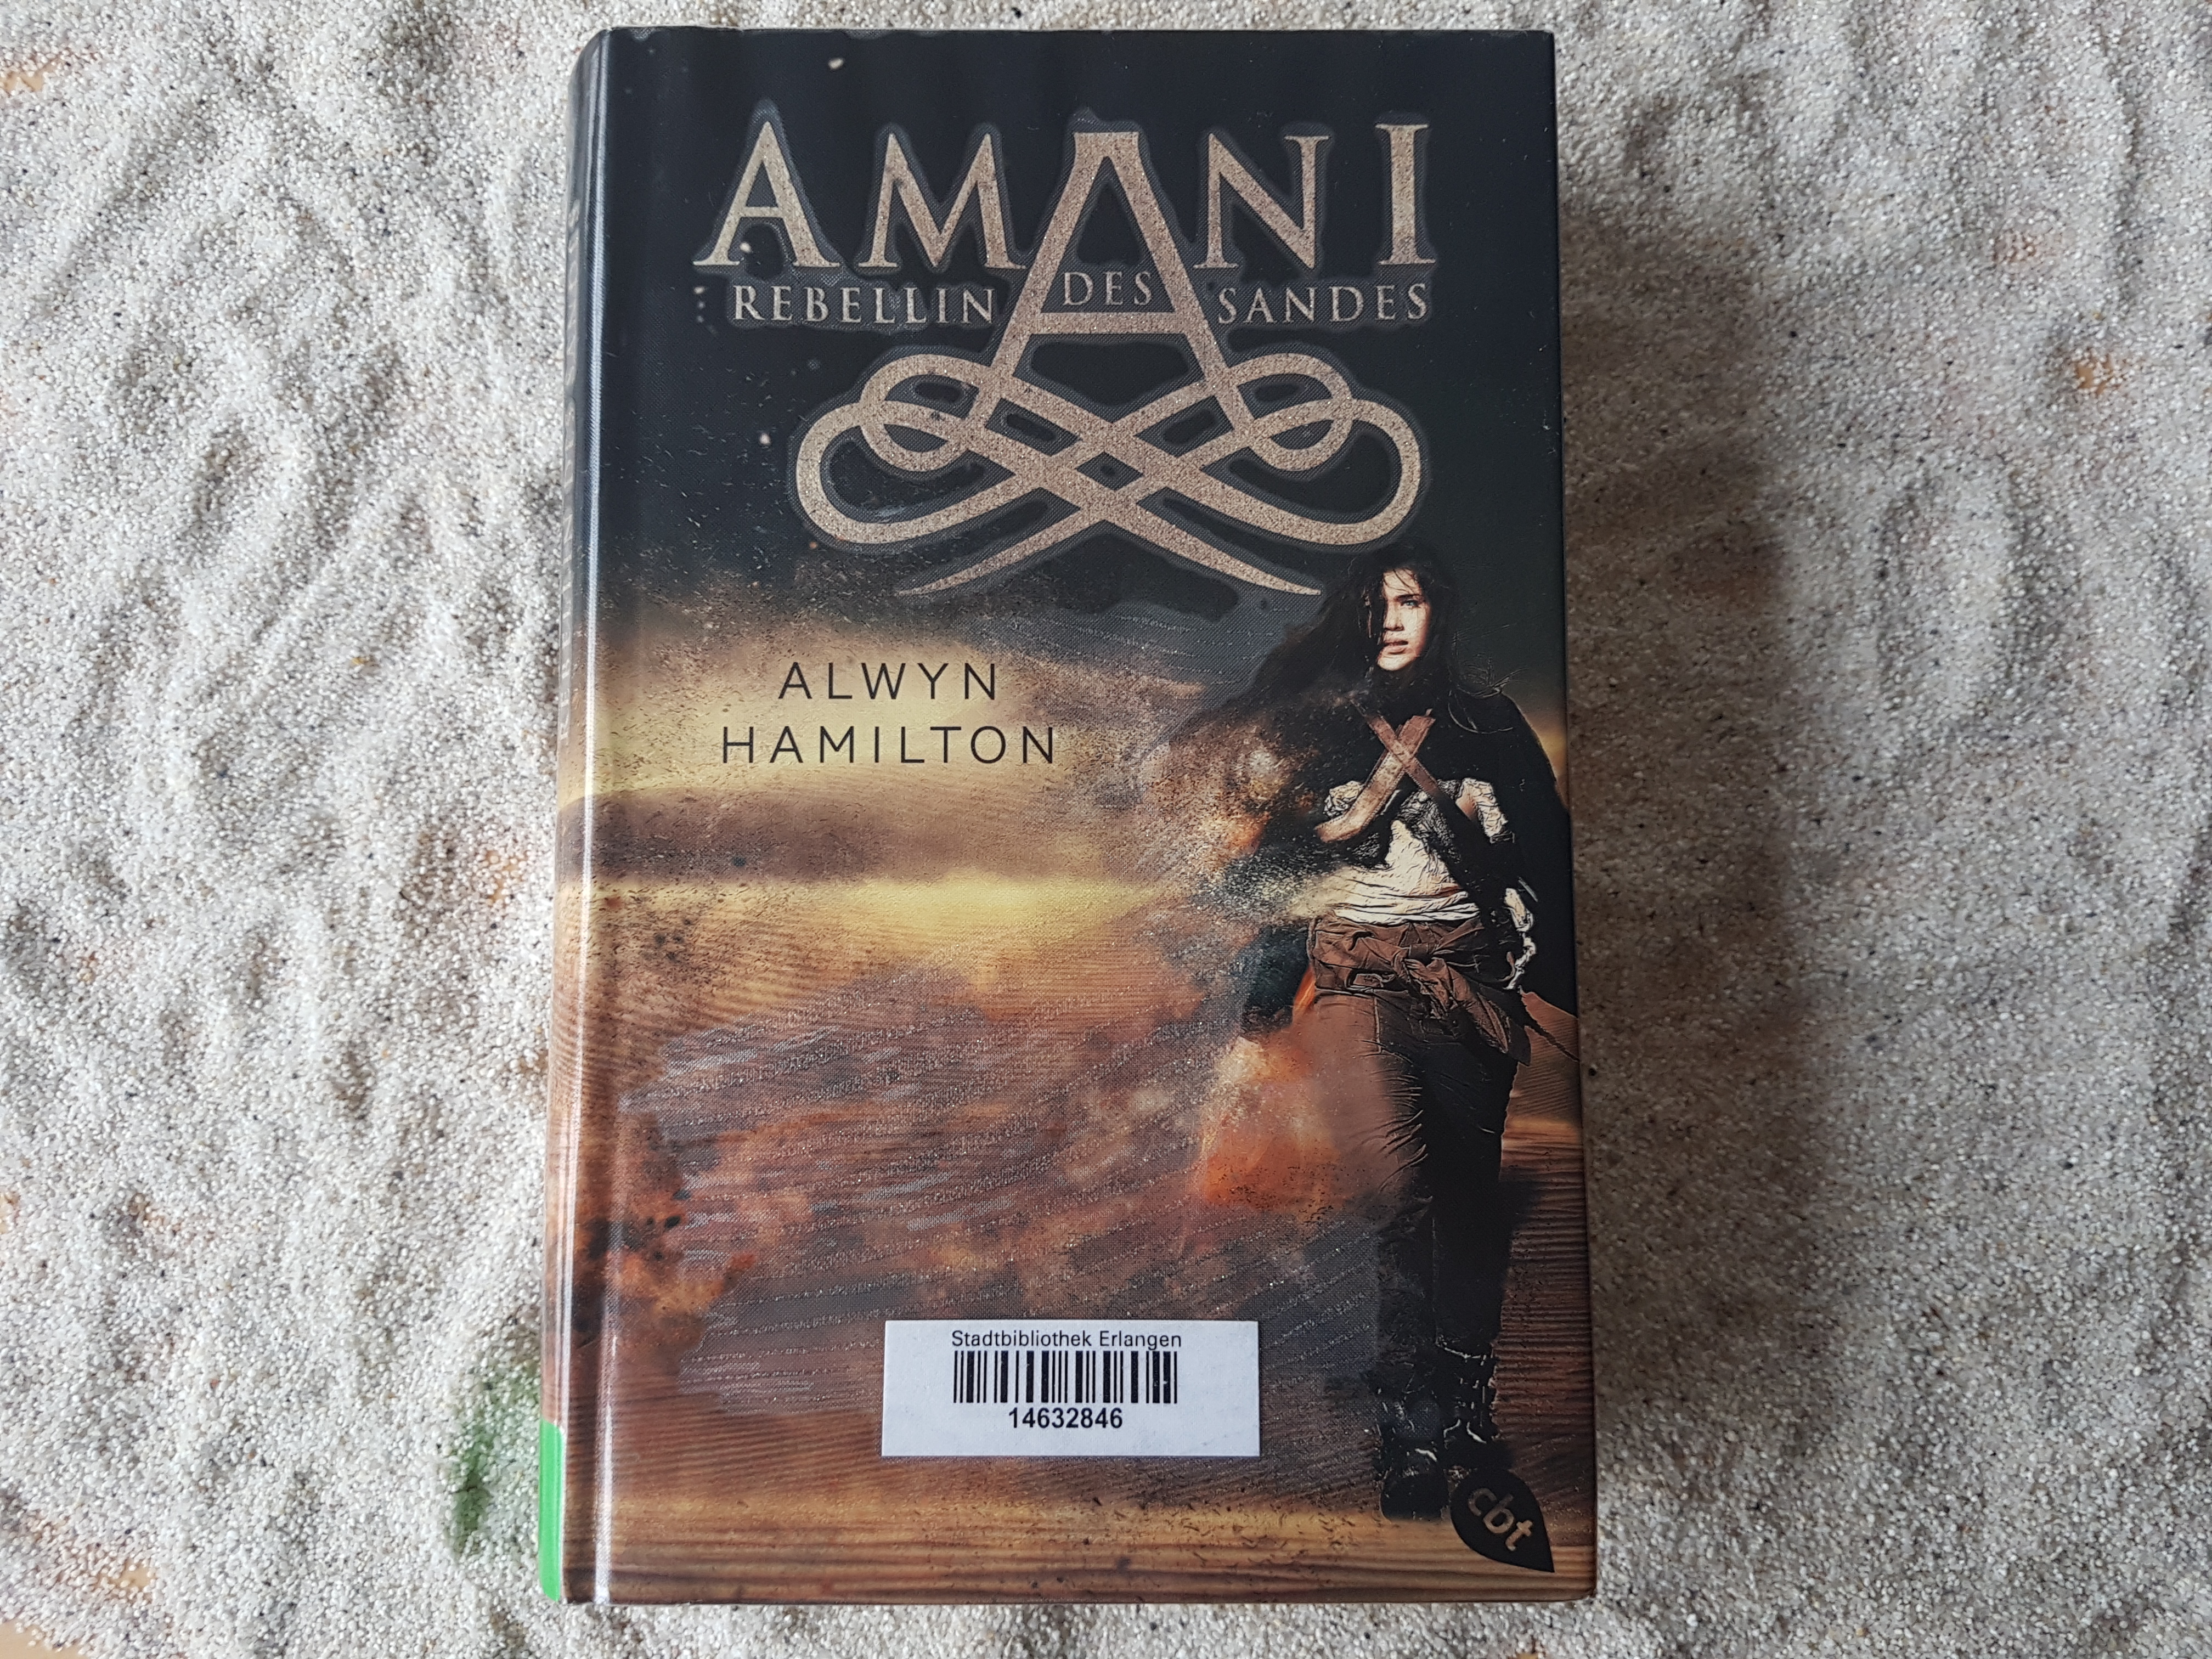 Das Buch "Amani - Rebellin des Sandes" liegt im Sand.